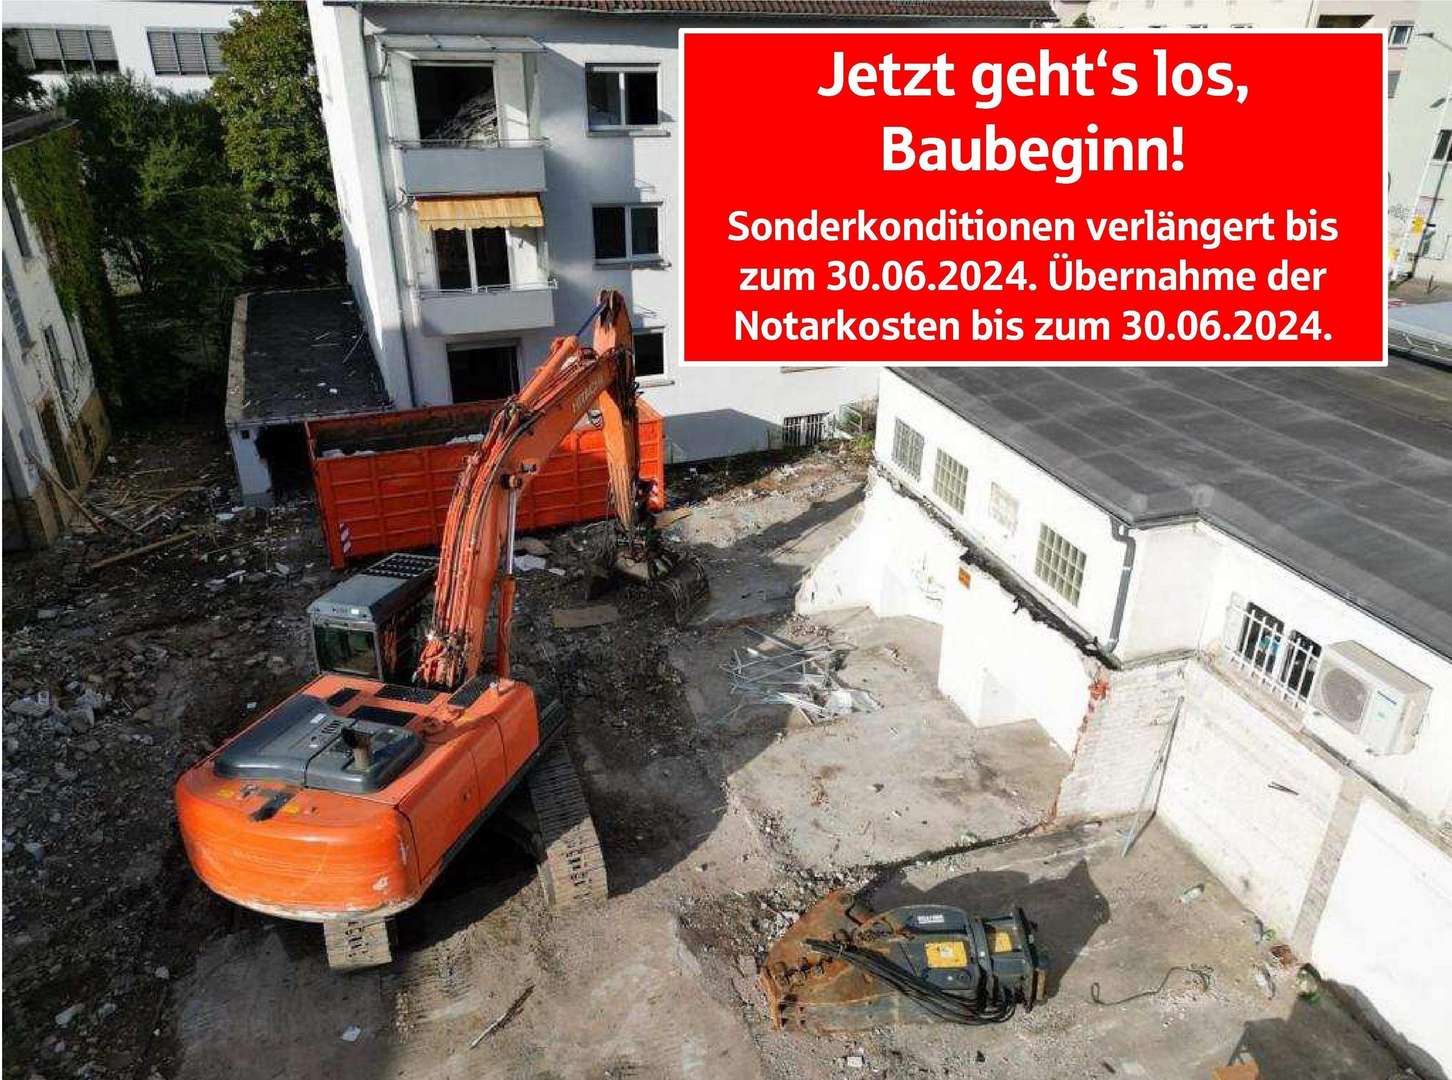 Jetzt gehts los, Baubeginn! - Dachgeschosswohnung in 64287 Darmstadt mit 61m² kaufen